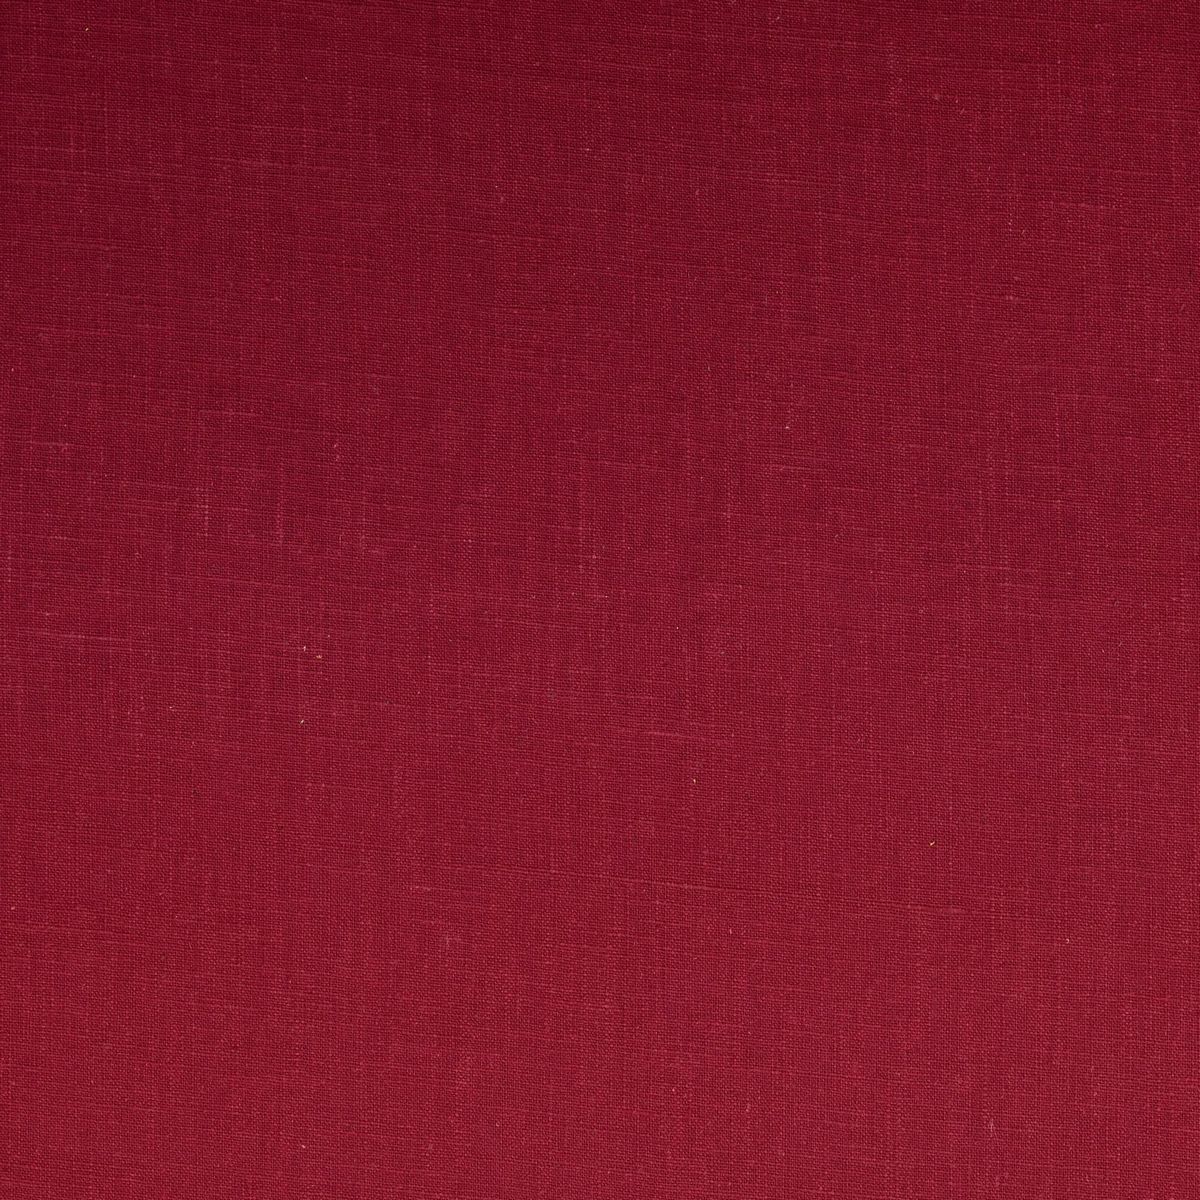 Burgundy Fabric by Chatham Glyn